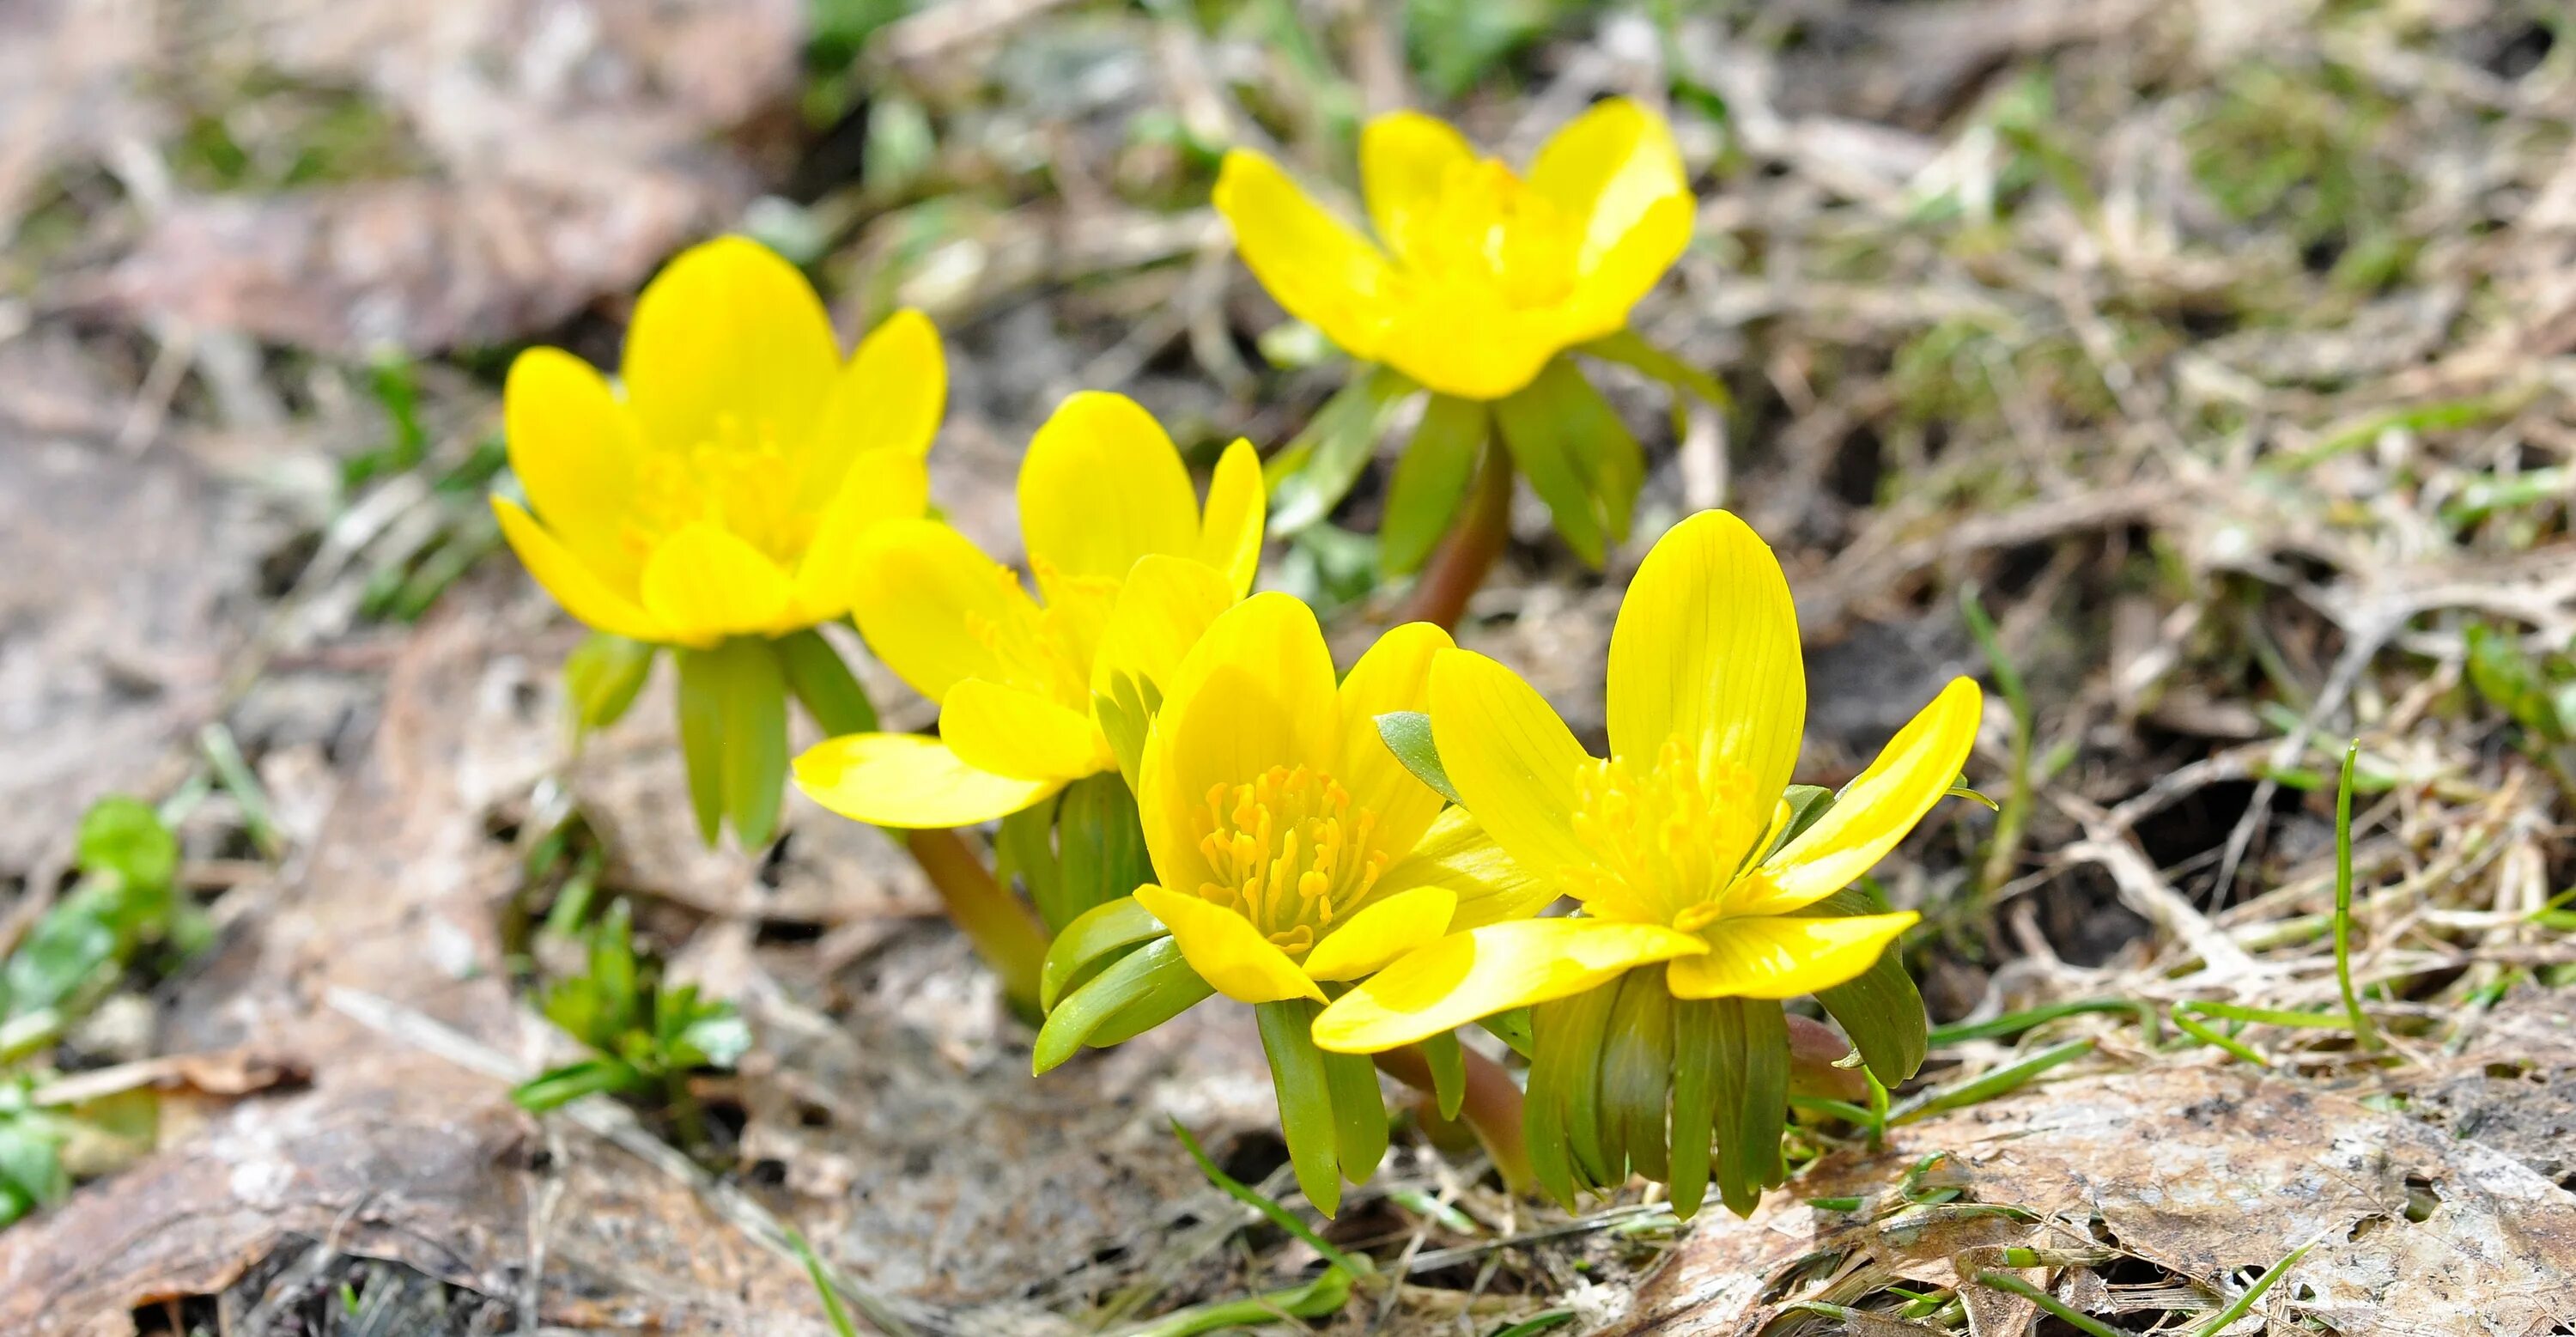 Ранние желтые цветочки. Желтые цветочки ранние весенние. Растения зацветающие ранней весной. Дикие подснежники желтые. Желтые ранние цветы в Крыму.